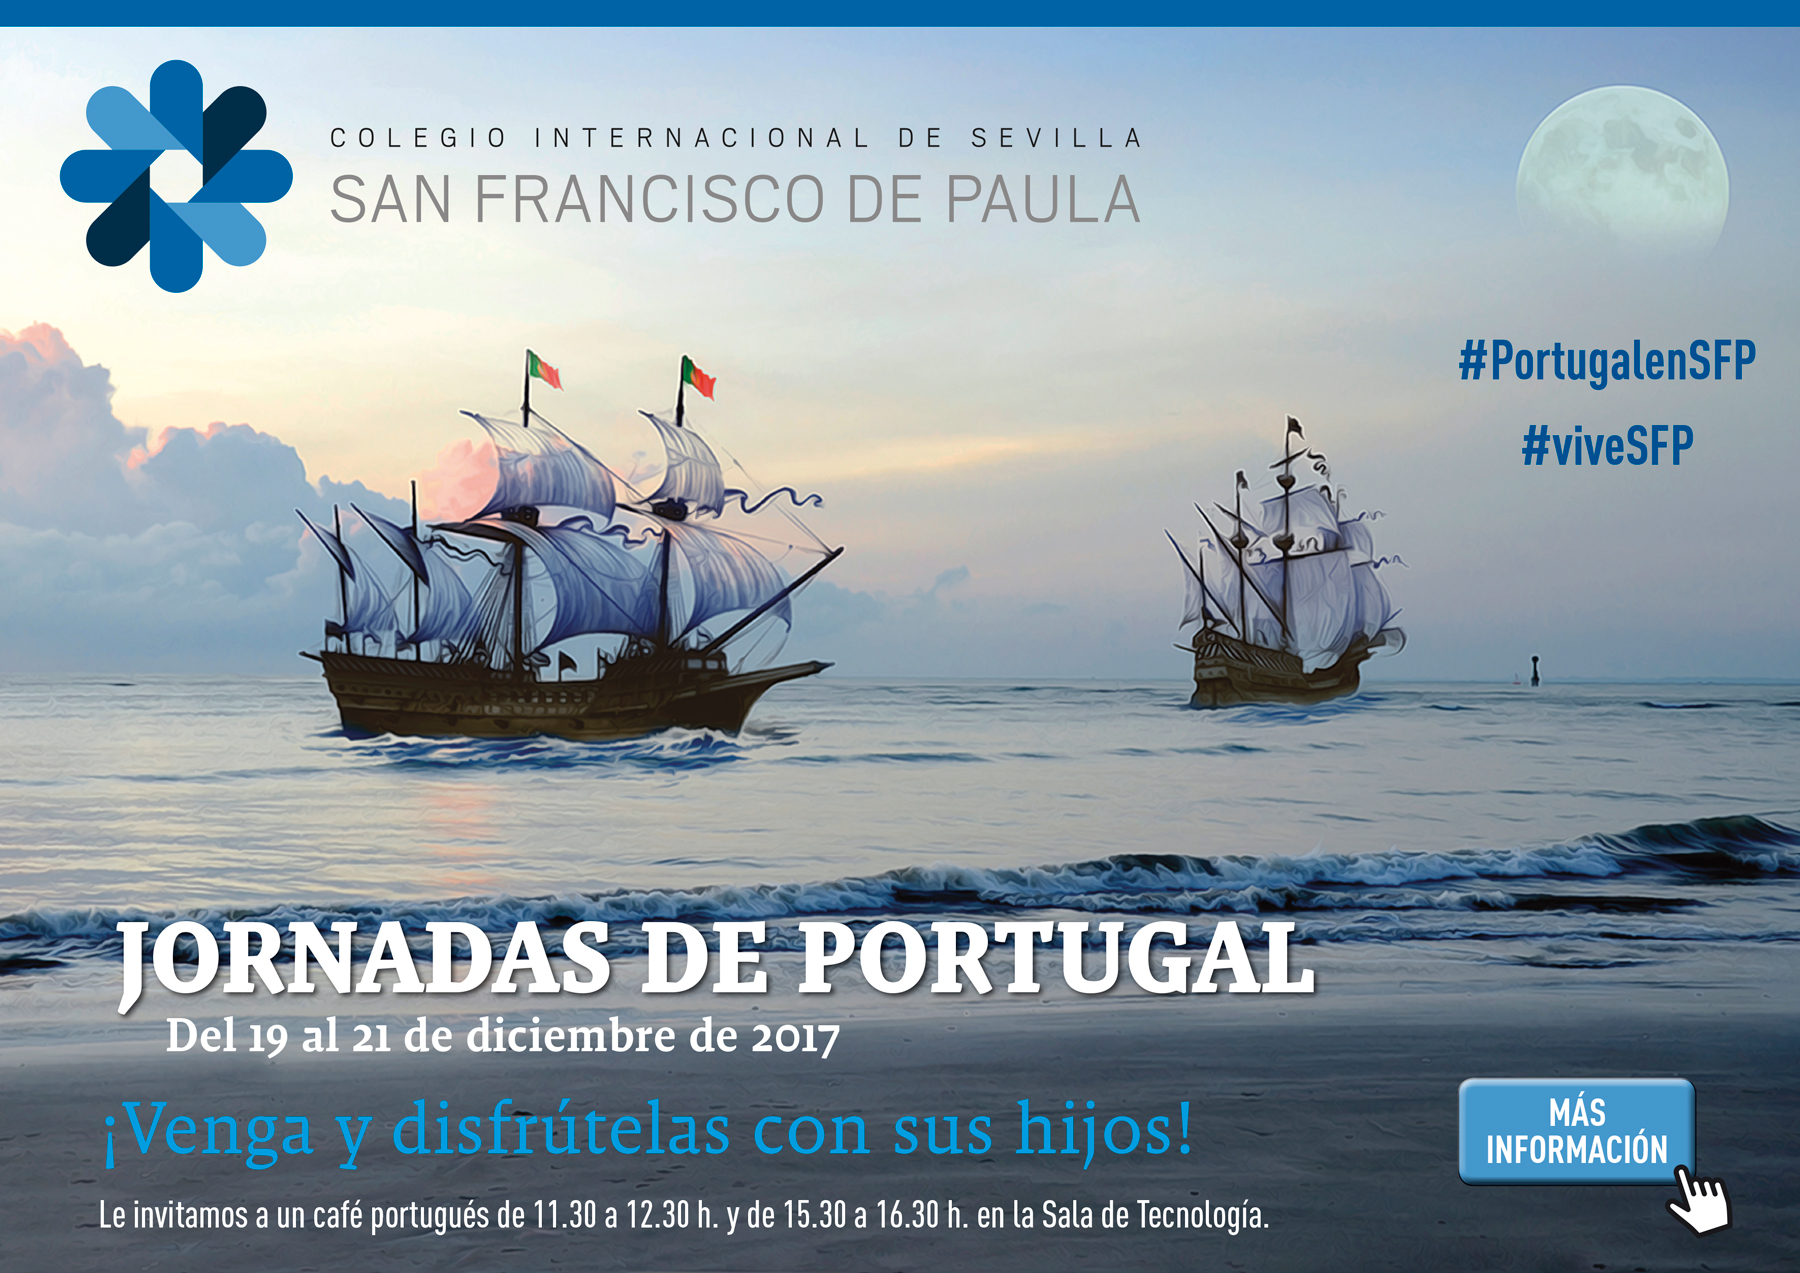 Jornadas Nacionales de Portugal - ¡Venga y disfrútelas con sus hijos! - Del 19 al 21 de diciembre